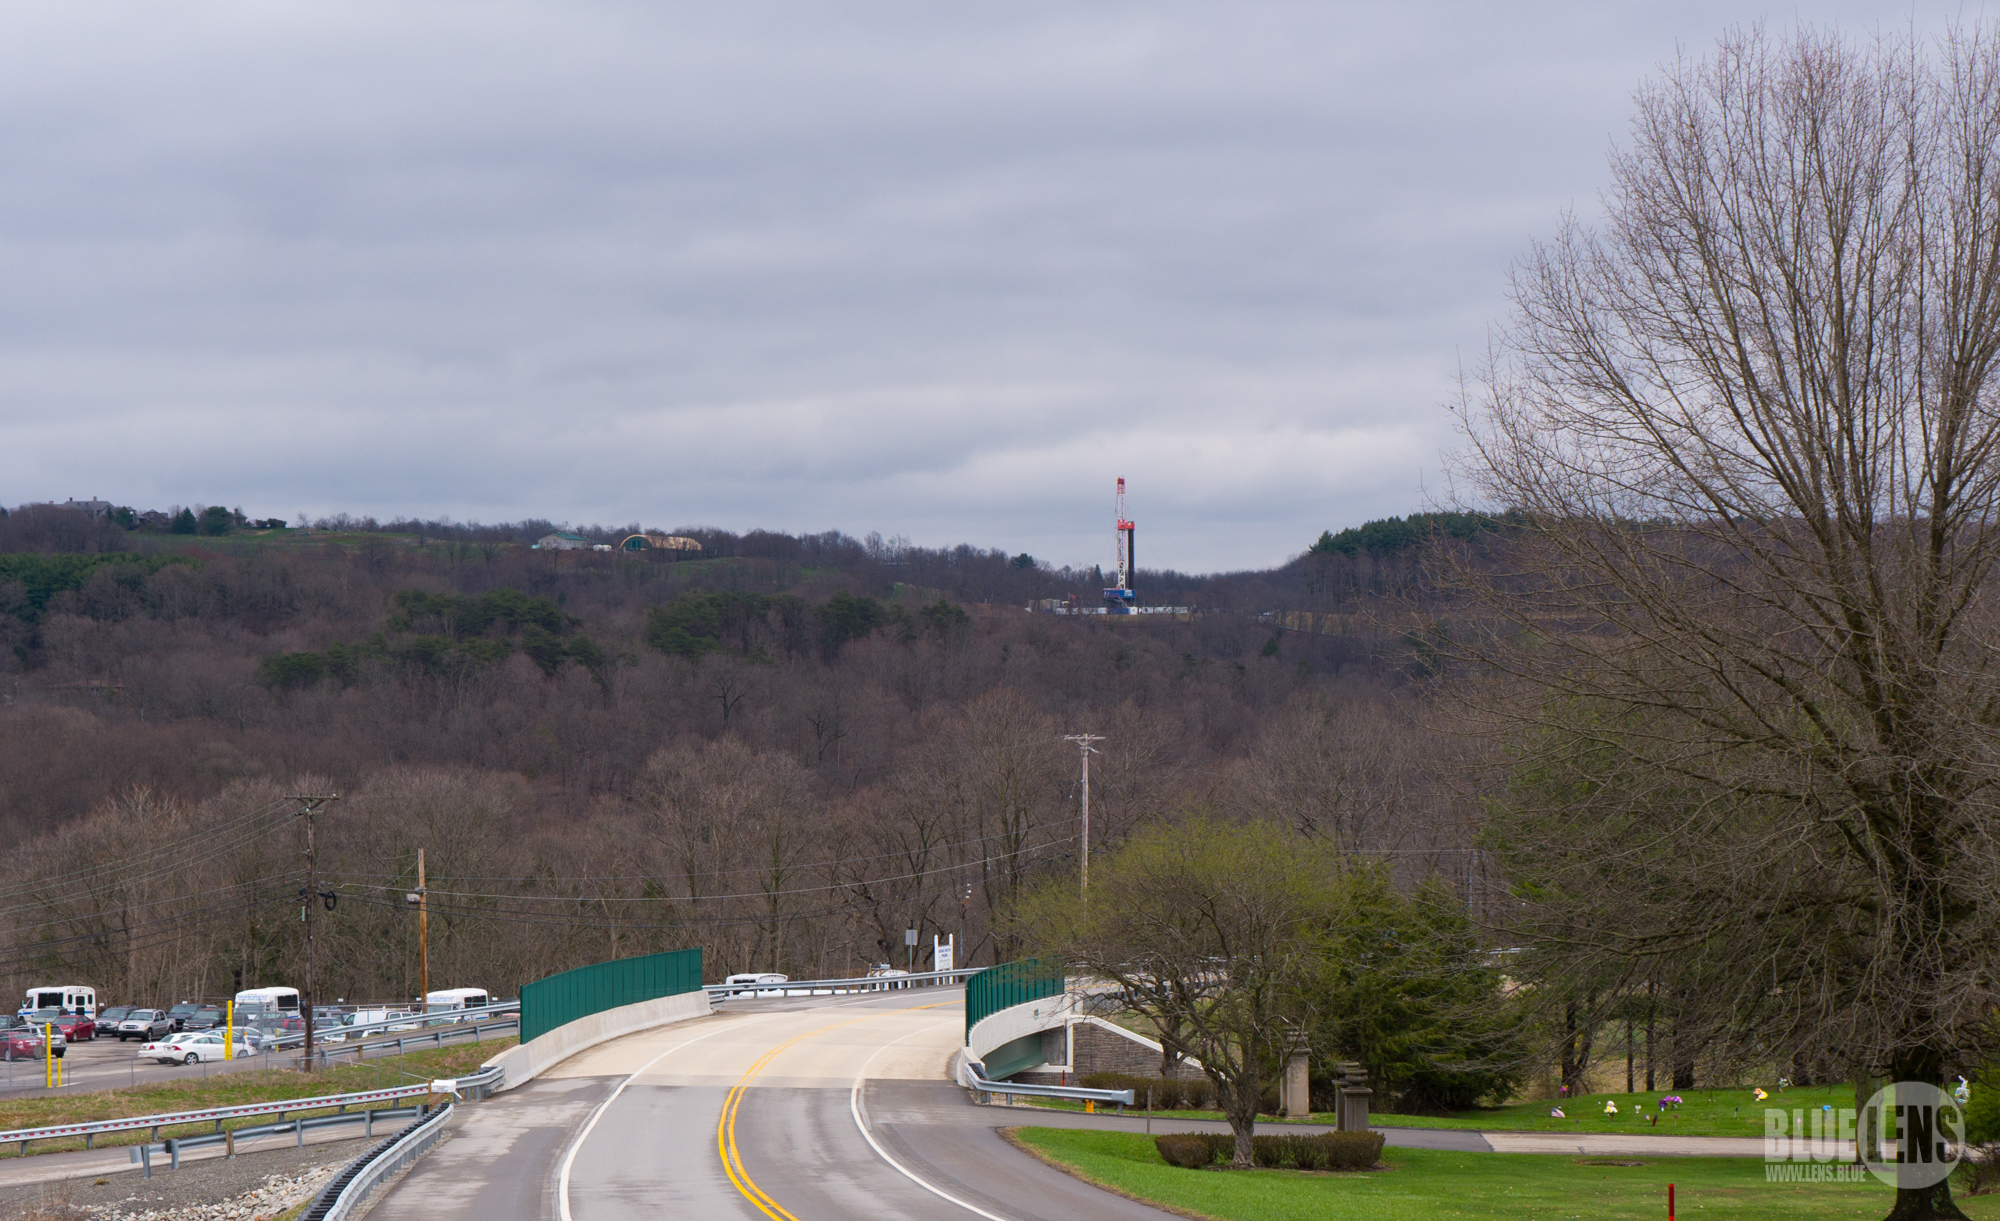 Une photographie montre un paysage rural et, au loin, sur la colline se trouve une grande foreuse de haute technologie.